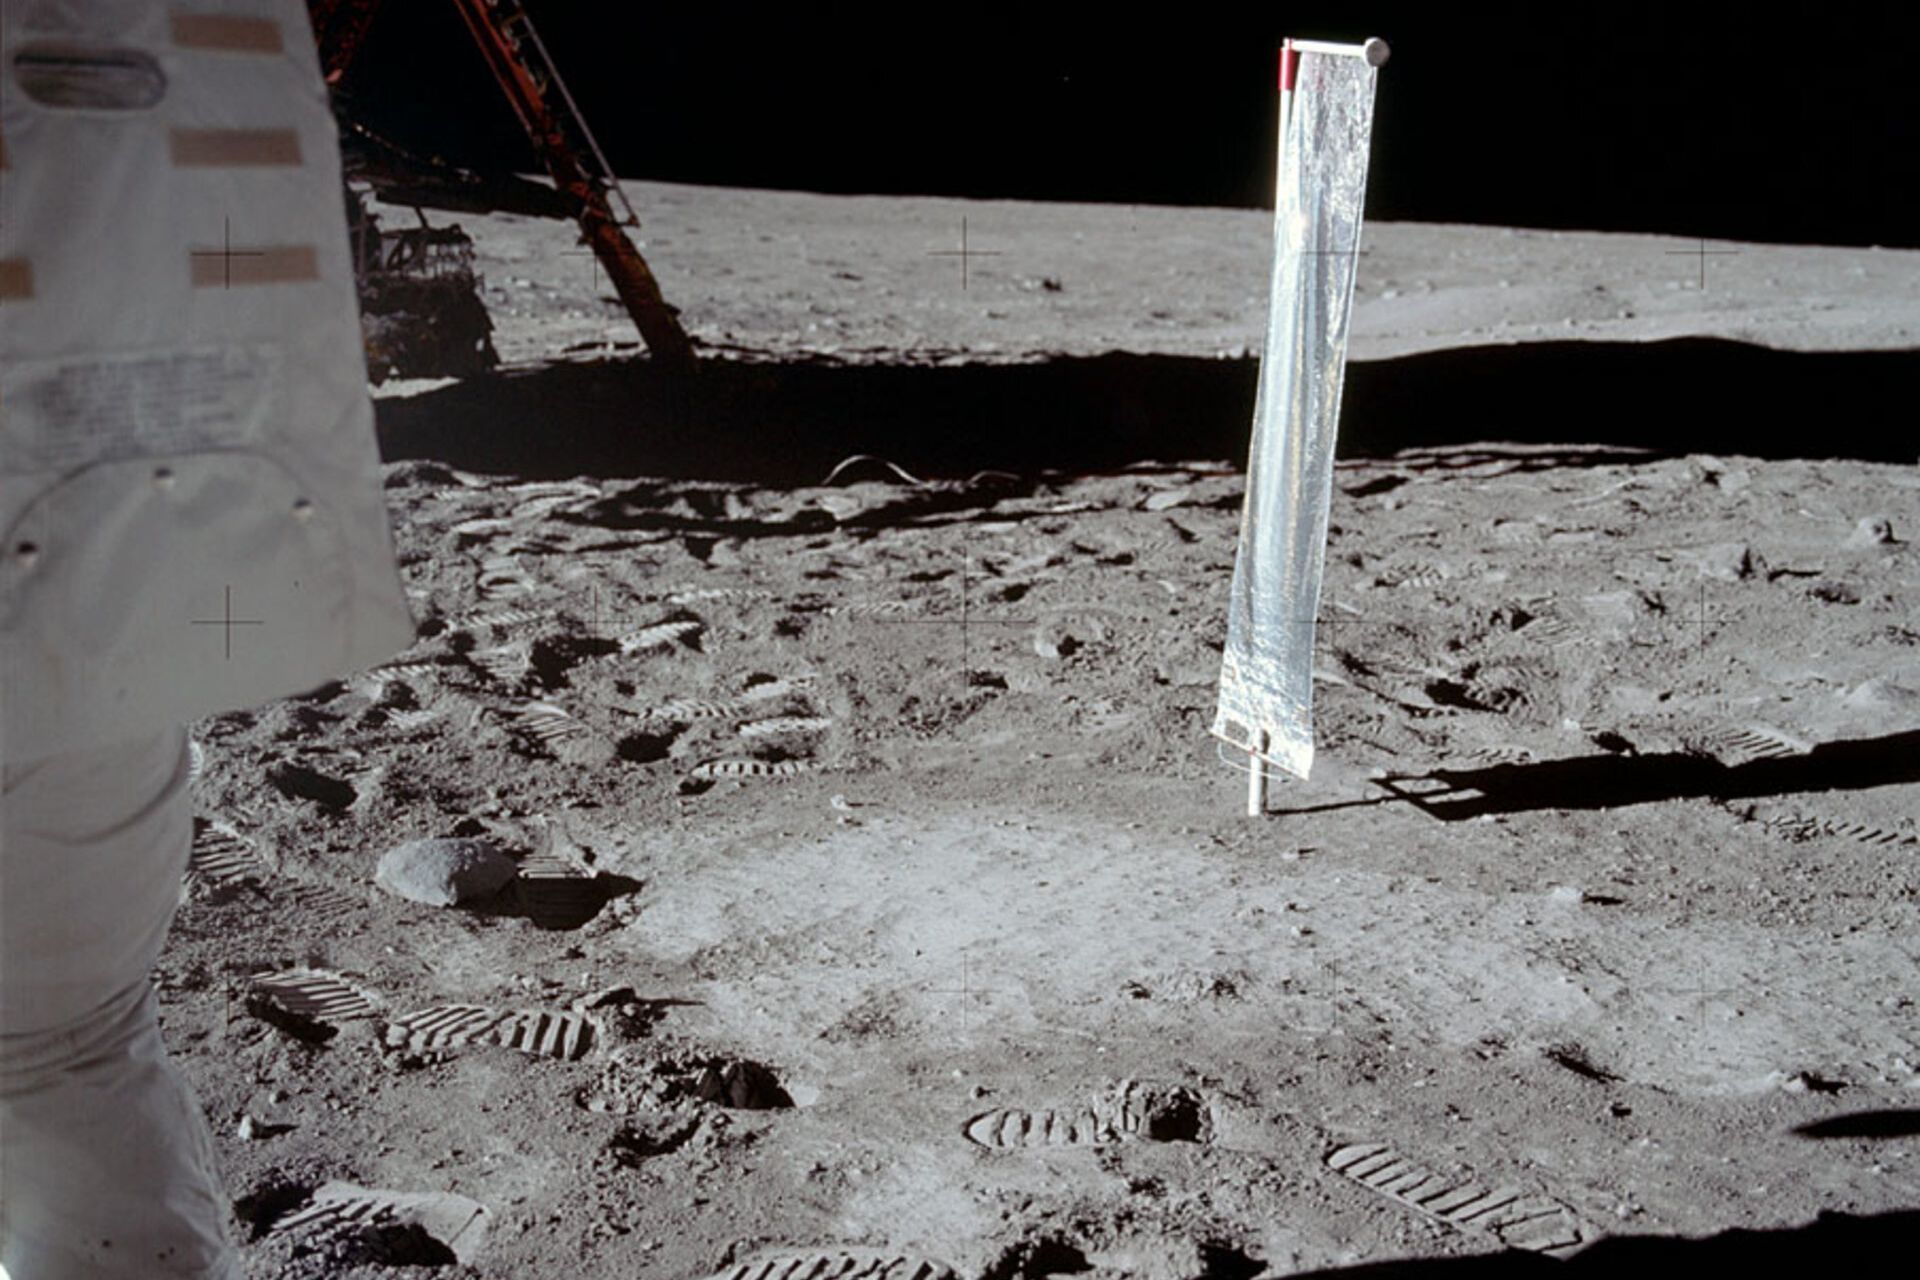 Il pilota del modulo lunare Edwin “Buzz” Aldrin dispiega l'esperimento svizzero di composizione del vento solare